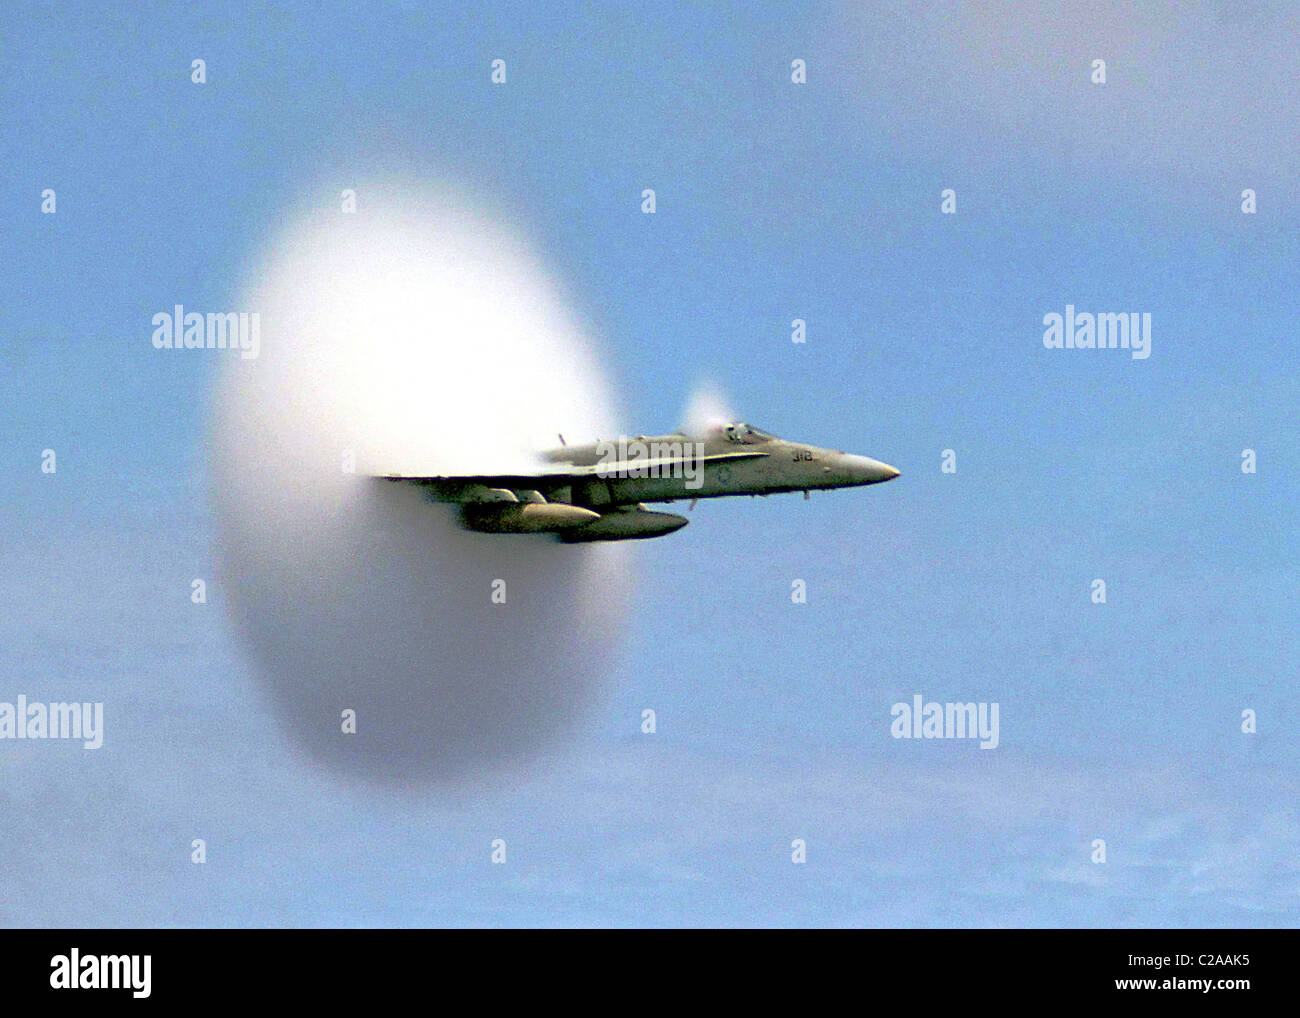 Vor der Kamera - ein US-Marine-Jet bricht die Schallmauer und schafft einen weißen Dampf Kegel / cloud bekannt als ein "Schock-Collar". Stockfoto